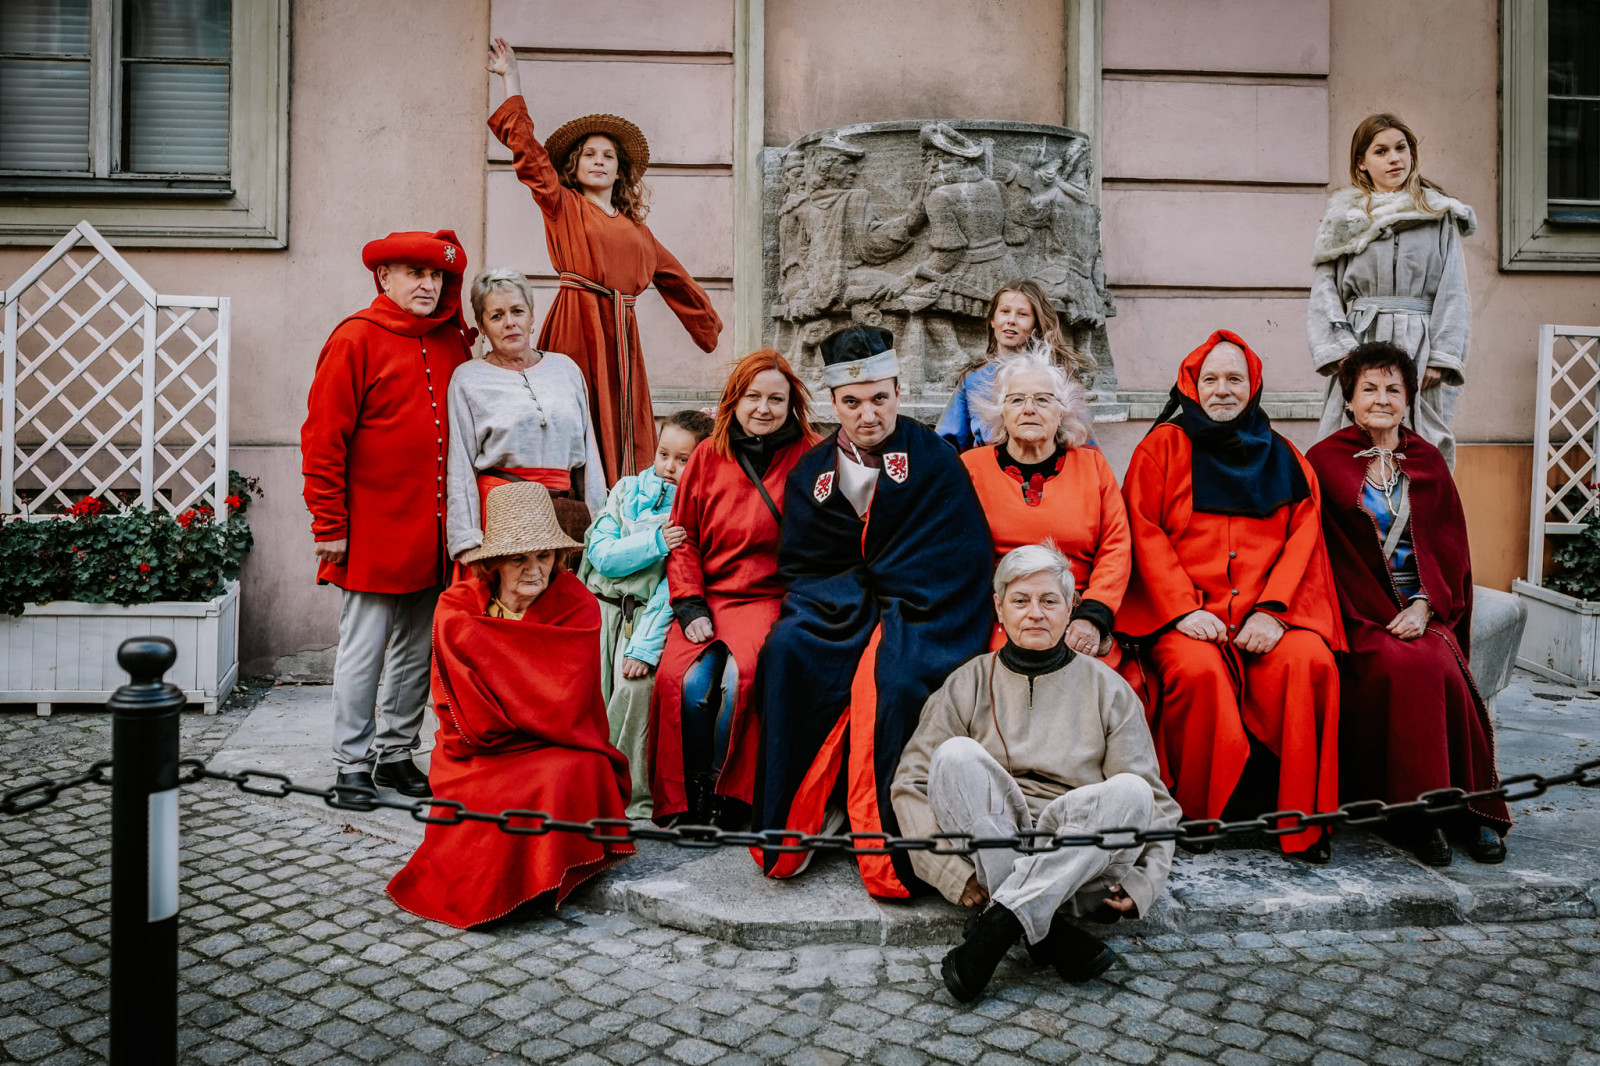 Trzynaścioro uśmiechniętych uczestników i uczestniczek warsztatów fotograficznych, w różnym wieku od dzieci po osoby starsze, pozują do zdjęcia siedząc na stopniach fontanny. Wszyscy są ubrani w stroje średniowiecznych mieszczan, które są w większości koloru czerwonego.